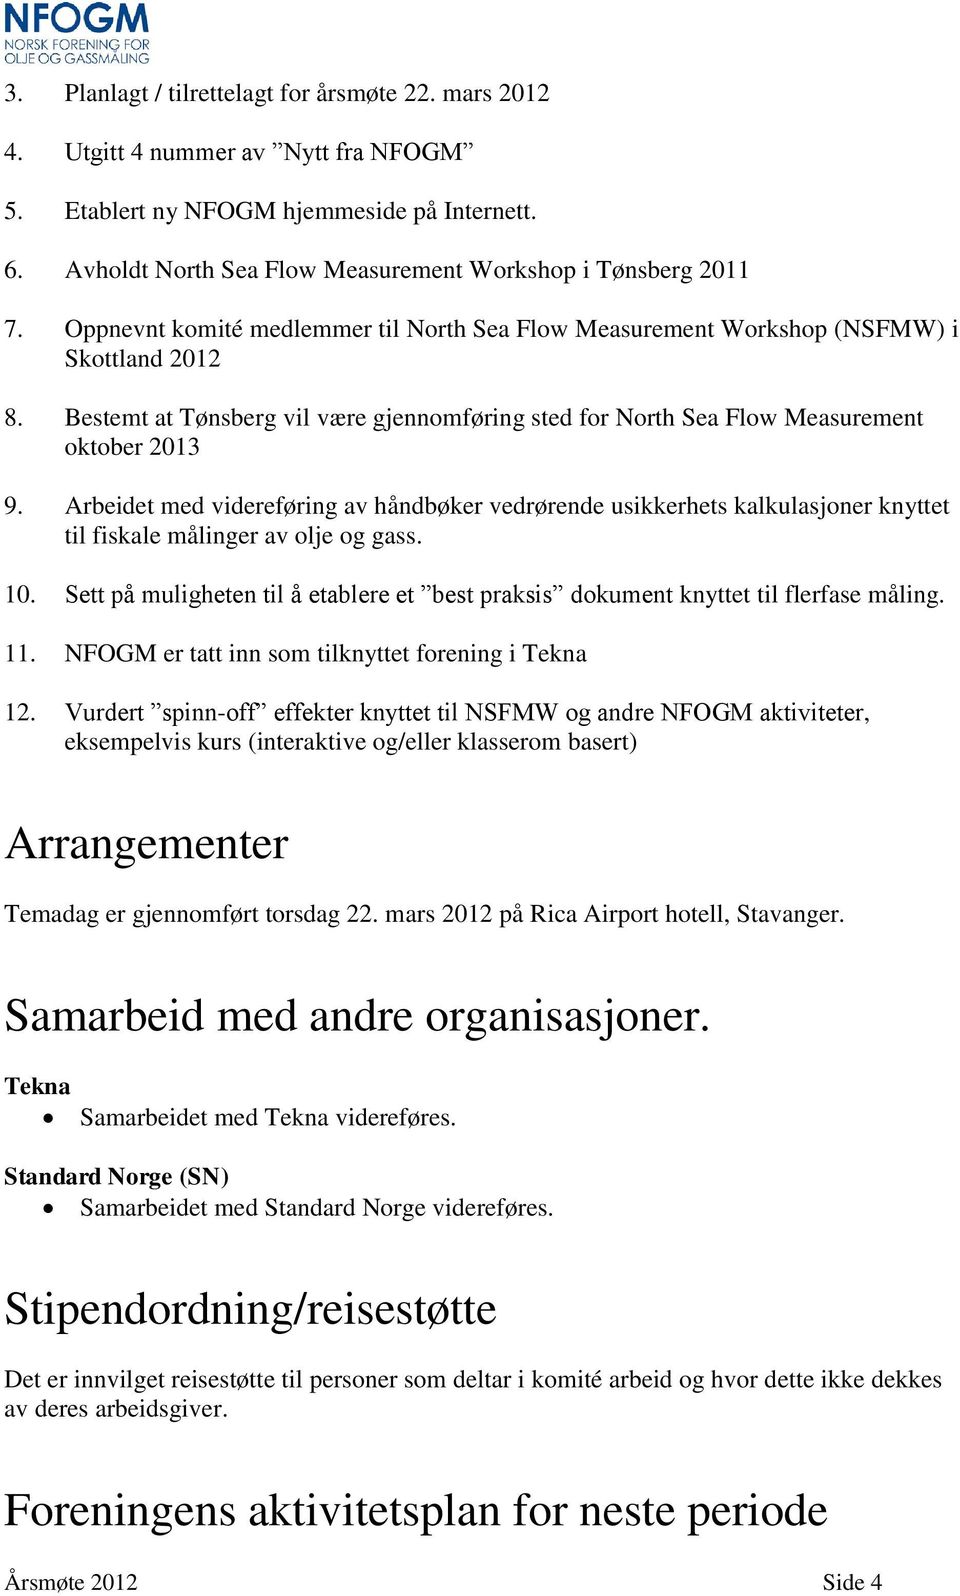 Bestemt at Tønsberg vil være gjennomføring sted for North Sea Flow Measurement oktober 2013 9.